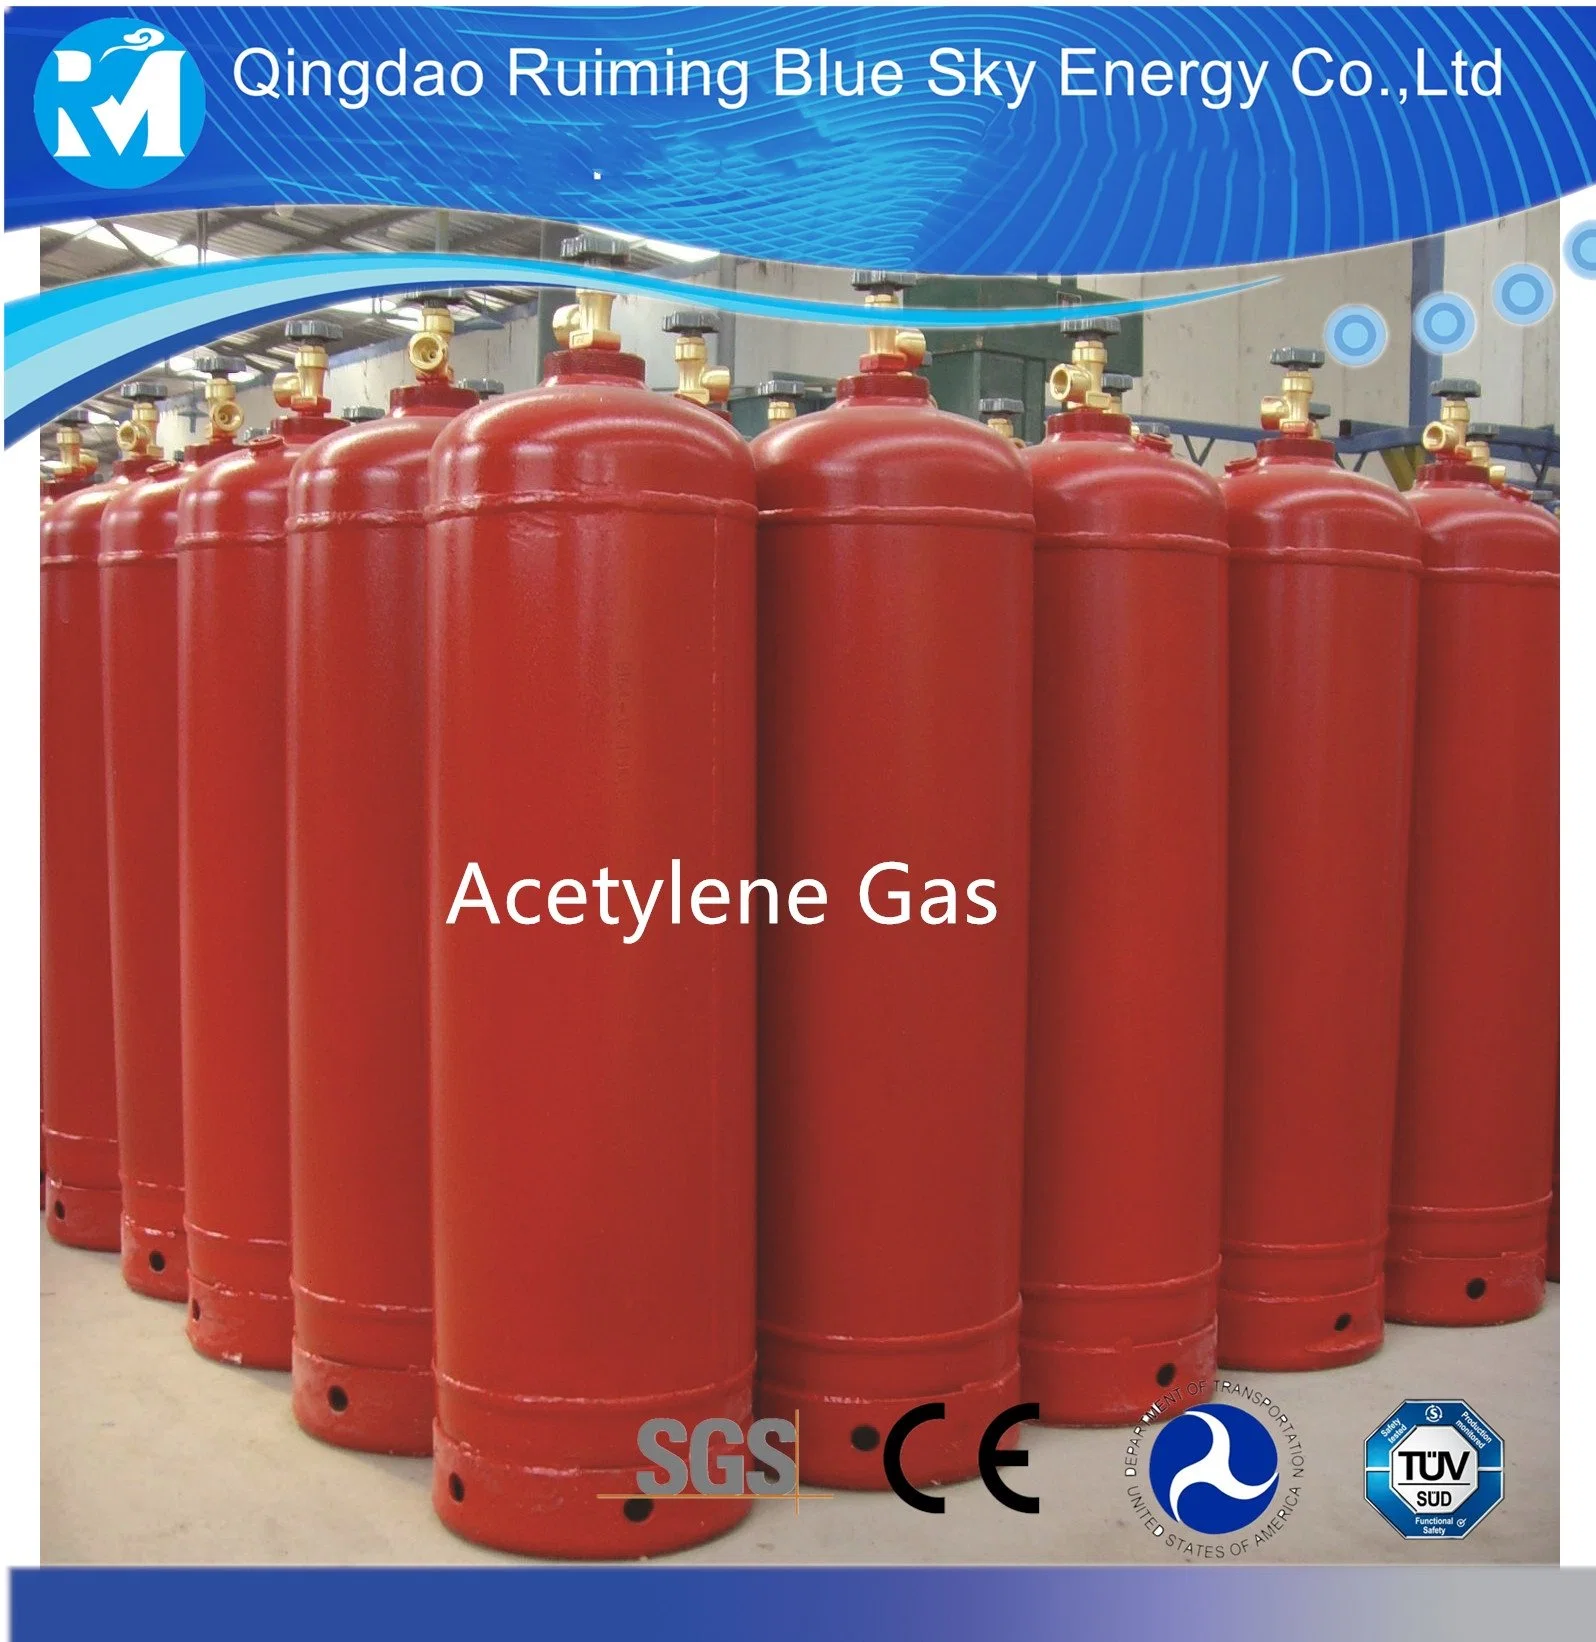 Cilindro de gas acetileno lleno con 6 kg de acetileno en venta.